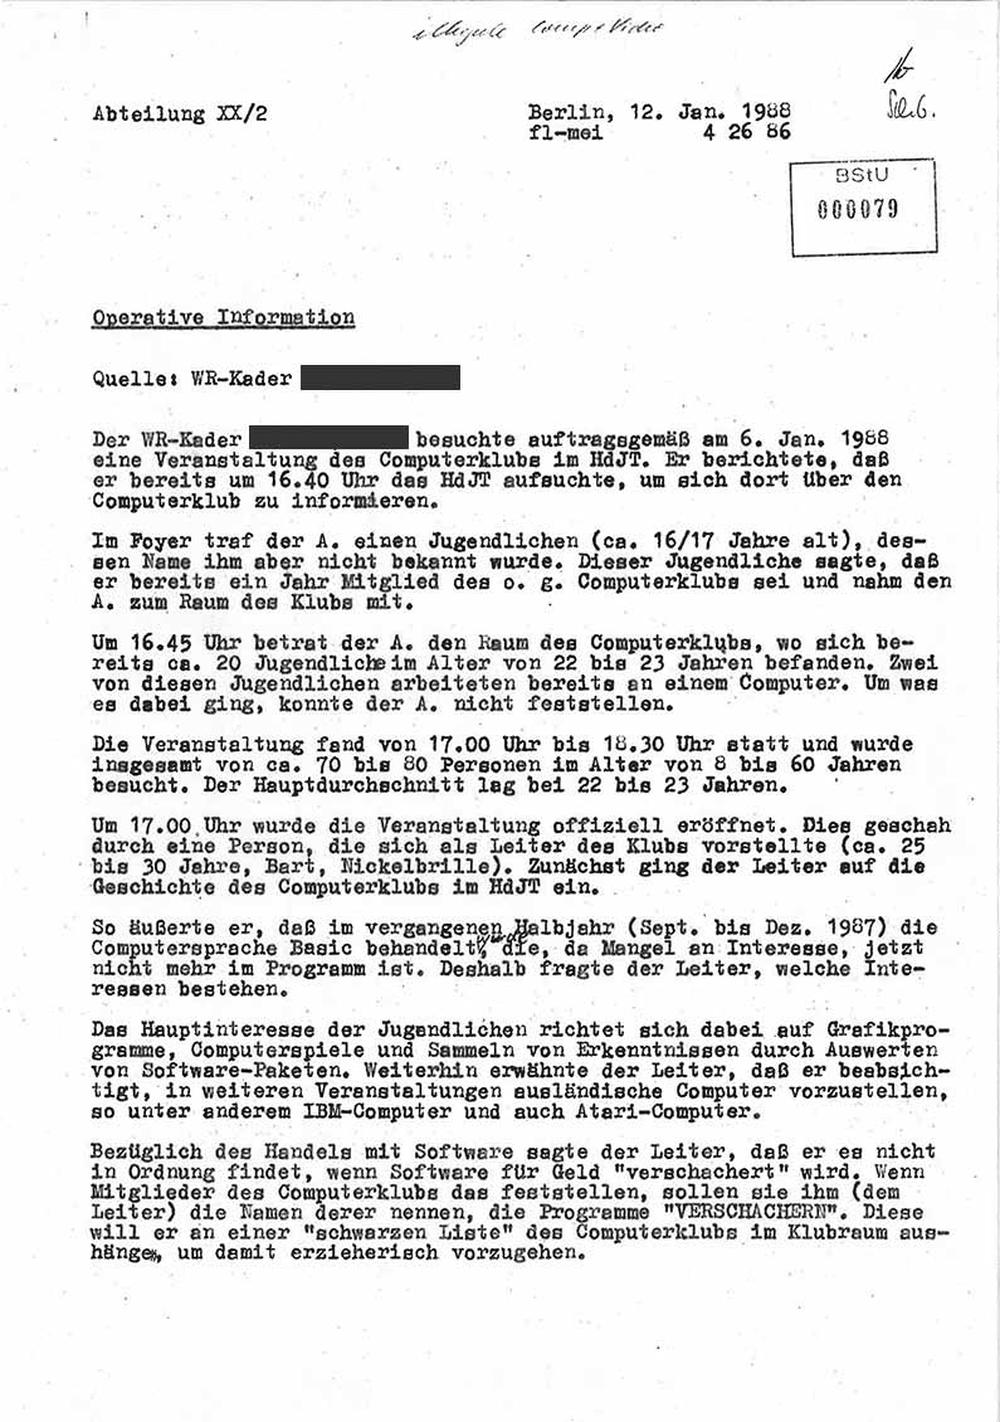 Videospiele in der DDR: "Um 16.45 Uhr betrat der A. den Raum des Computerklubs": Ausriss aus einem der IM-Berichte zum HdjT